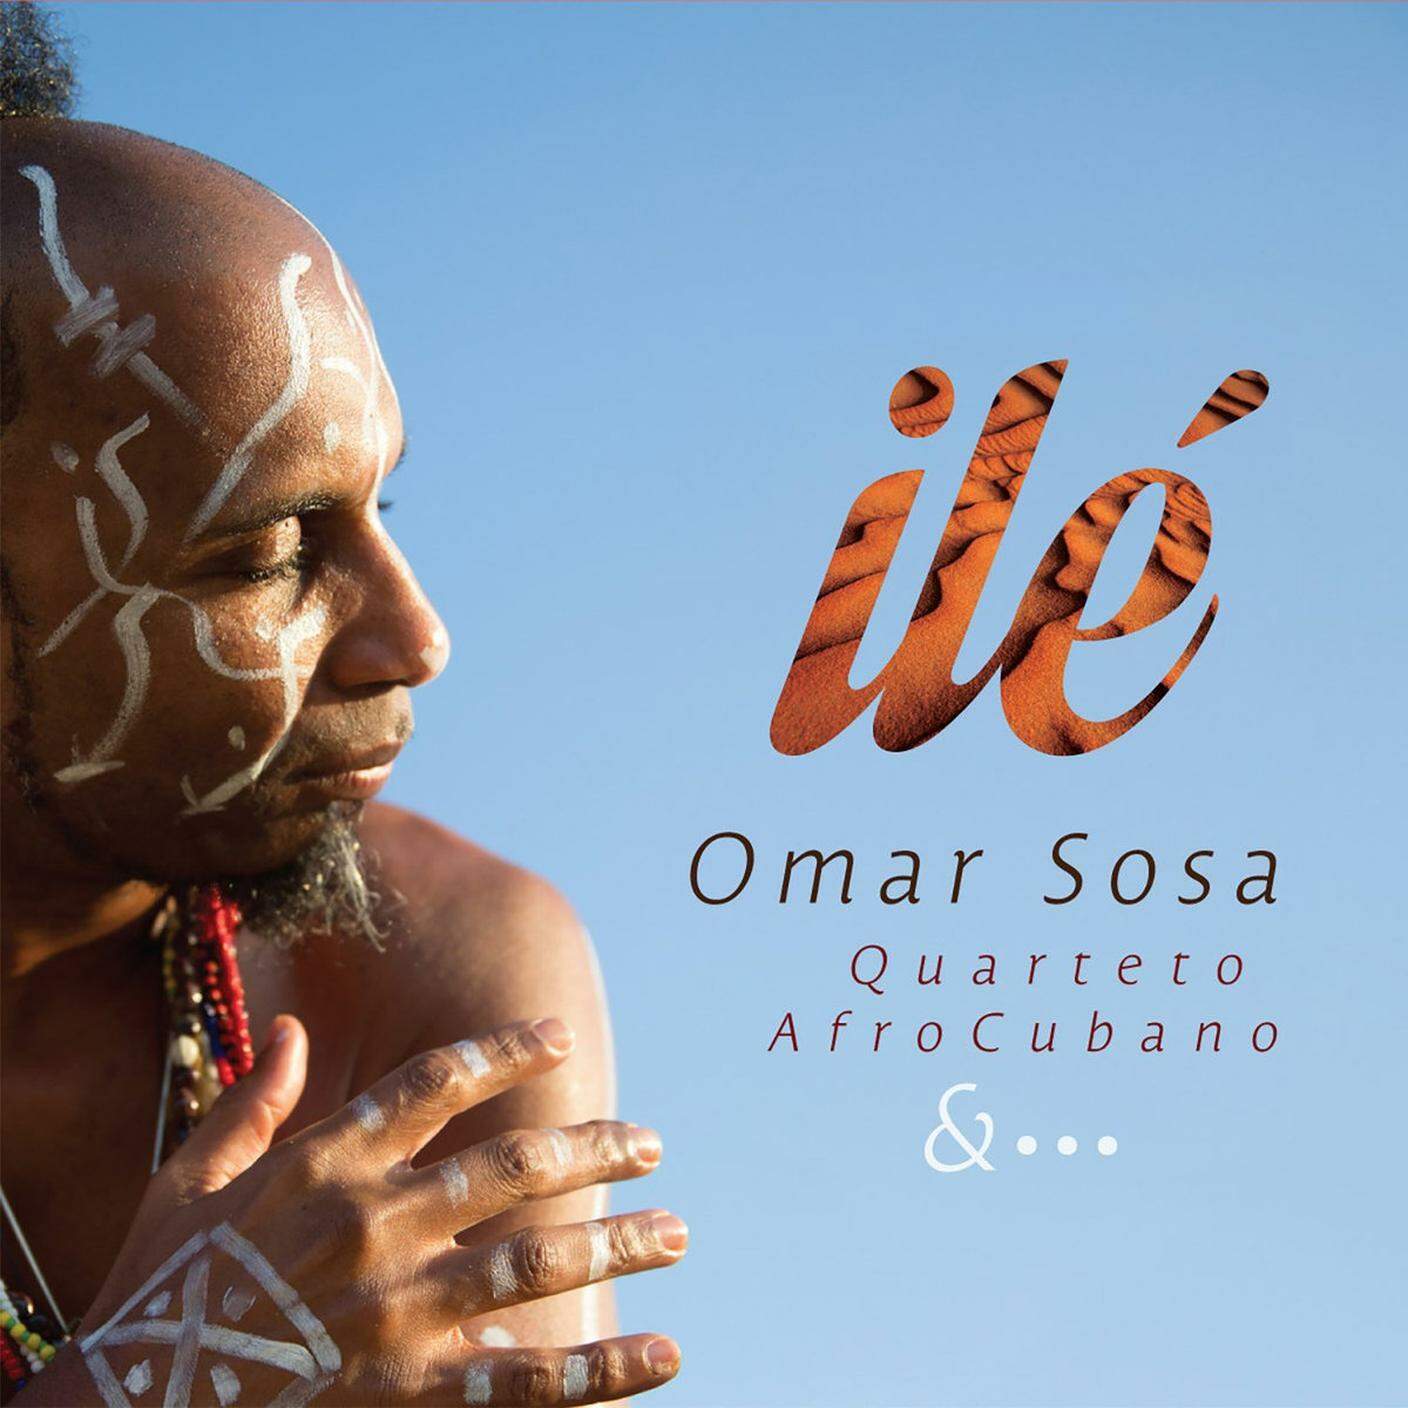 Omar Sosa; "Dame La Luz"; Otá Records (dettaglio copertina)